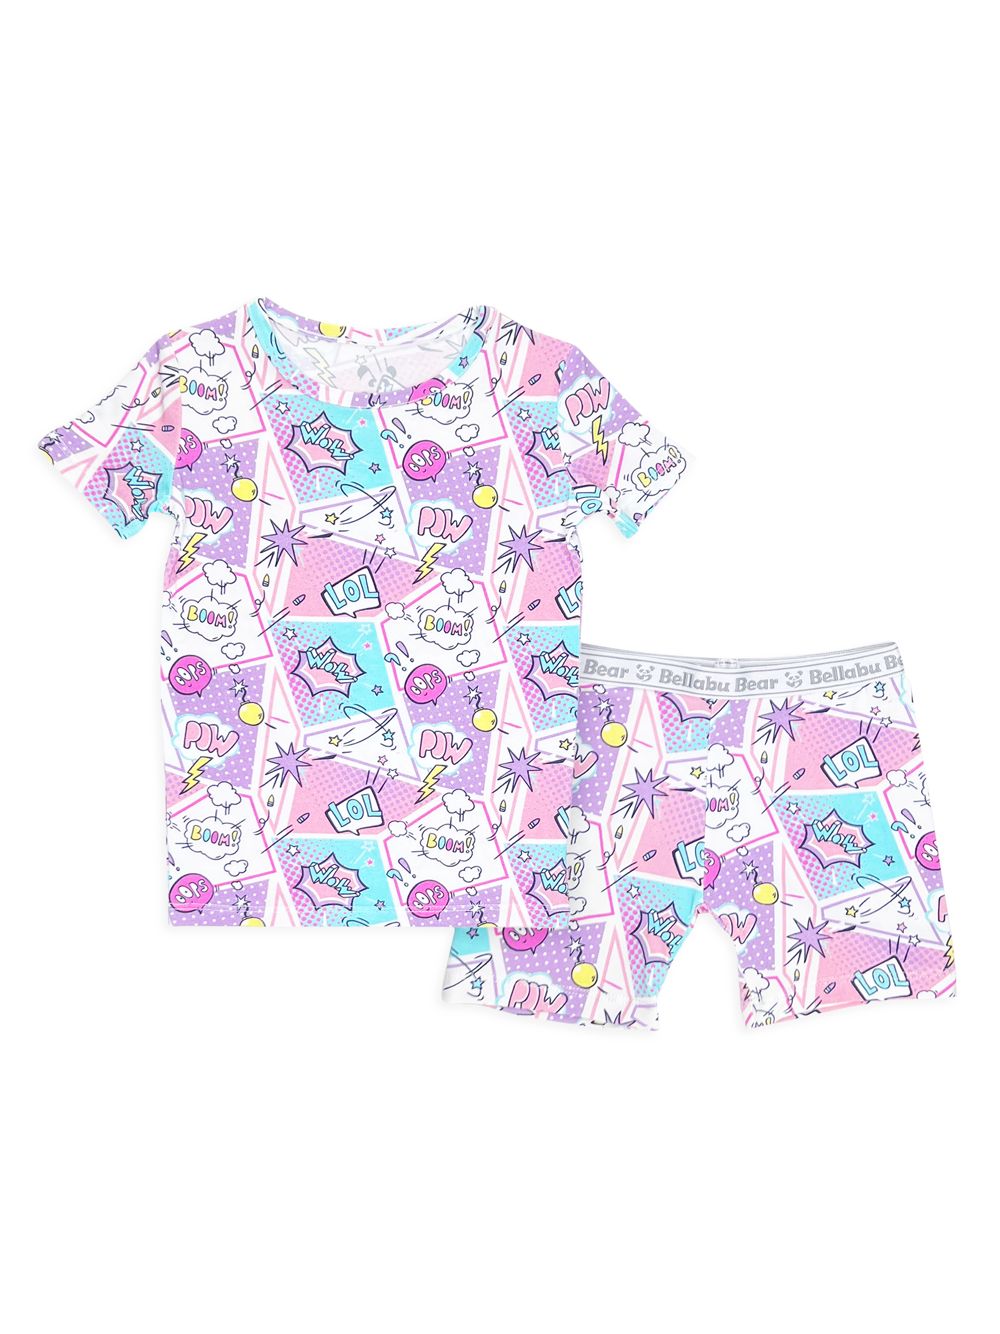 Пижамные шорты с принтом комиксов для маленьких девочек, маленьких девочек Bellabu Bear цена и фото